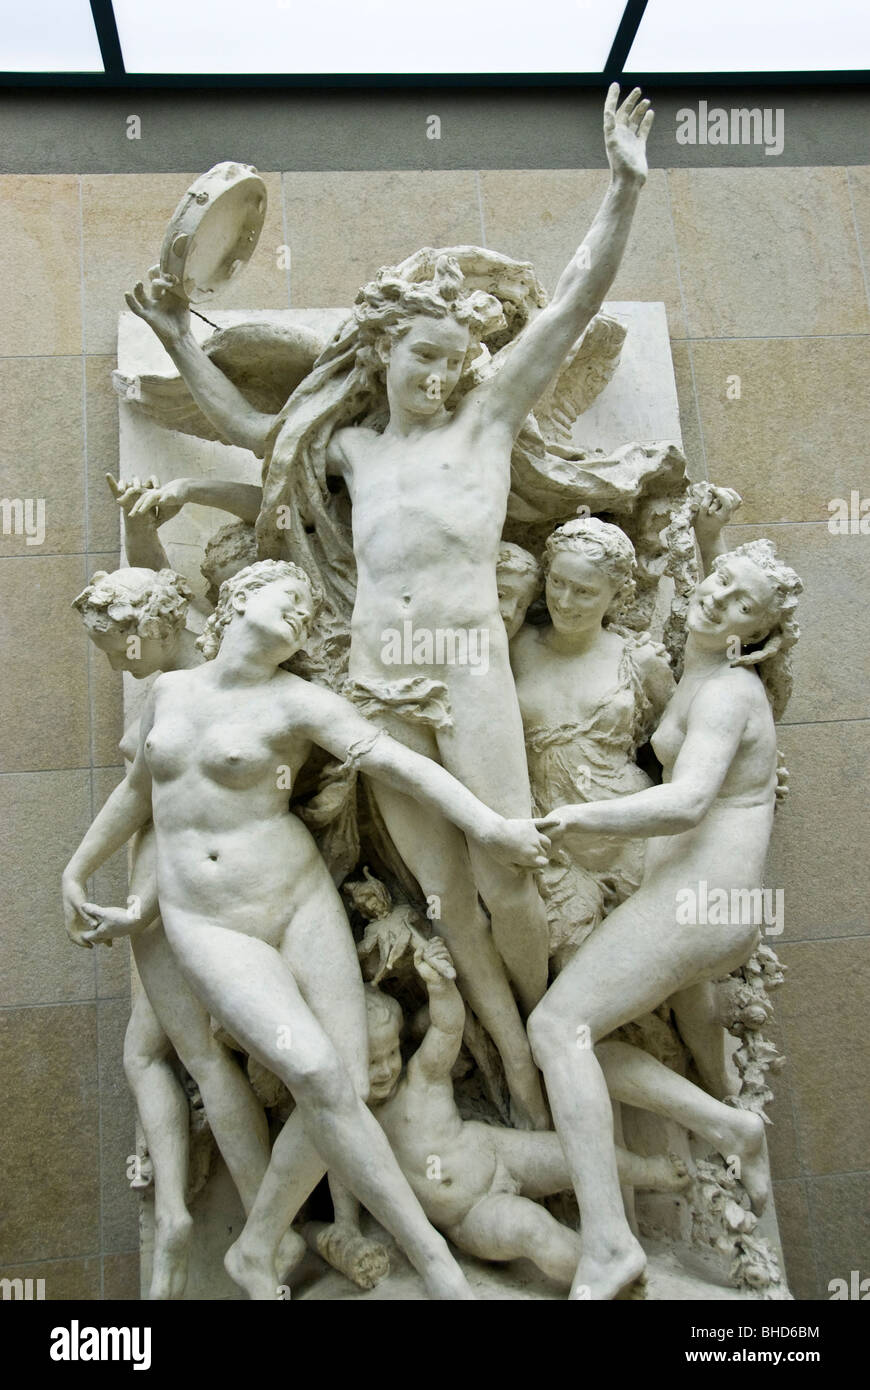 Paris, Frankreich - Orsay Museum, zentraler Skulpturengang, mit Sammlung französischer Skulpturen aus dem 19. Jahrhundert, 'Tanz' Marmorskulptur Frauenfigur, urbane Kunst Paris, romantische Kunst Stockfoto